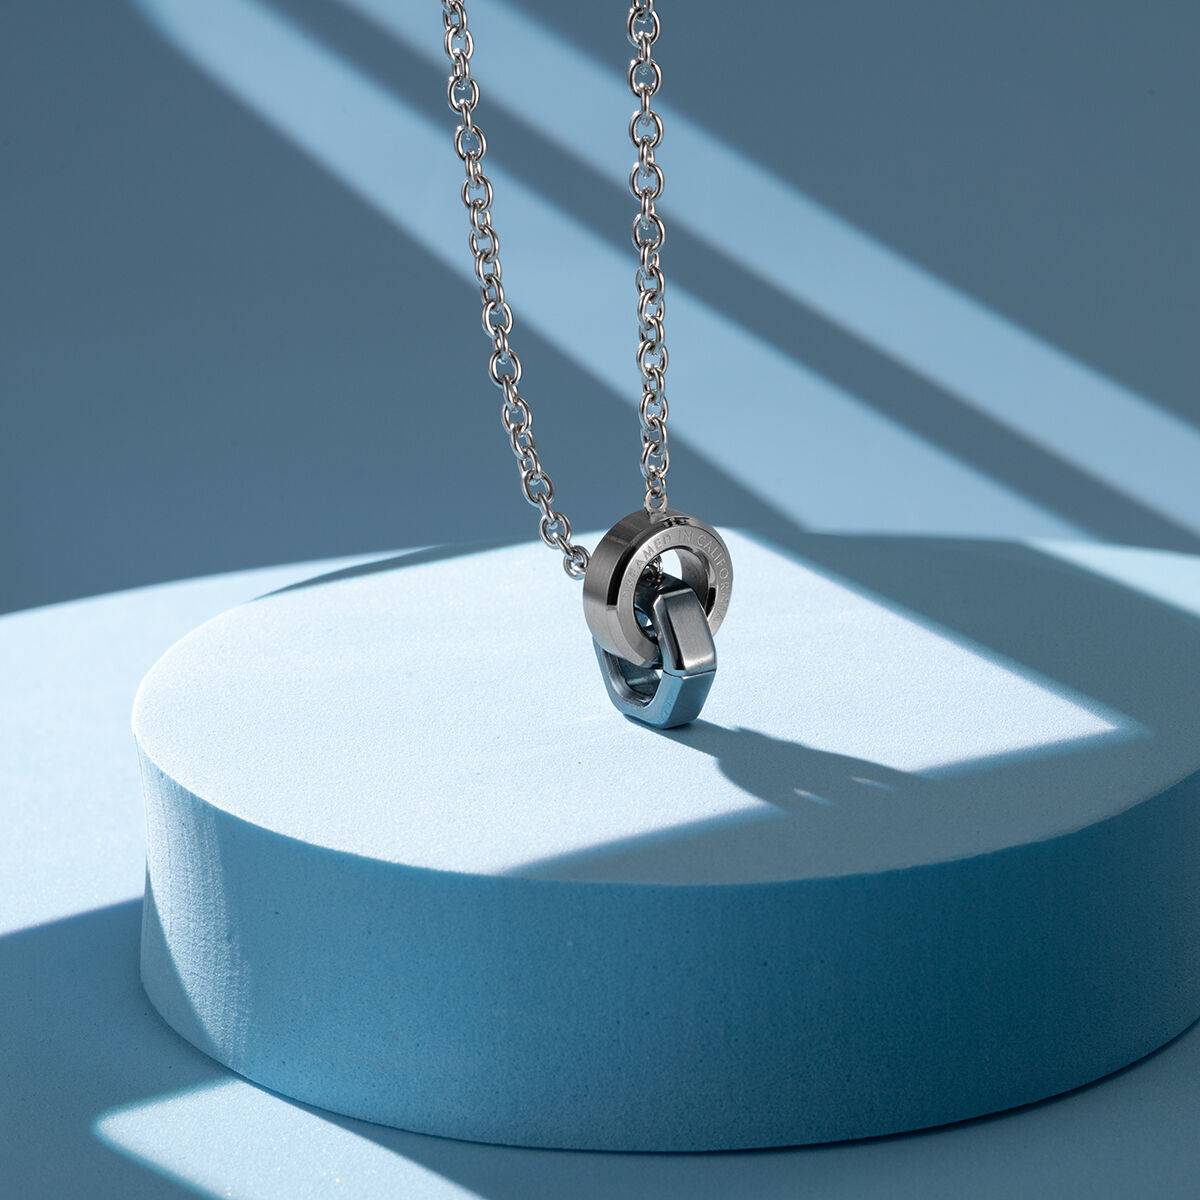 Necklace Chain Hardware by Erstwilder – Modern Millie